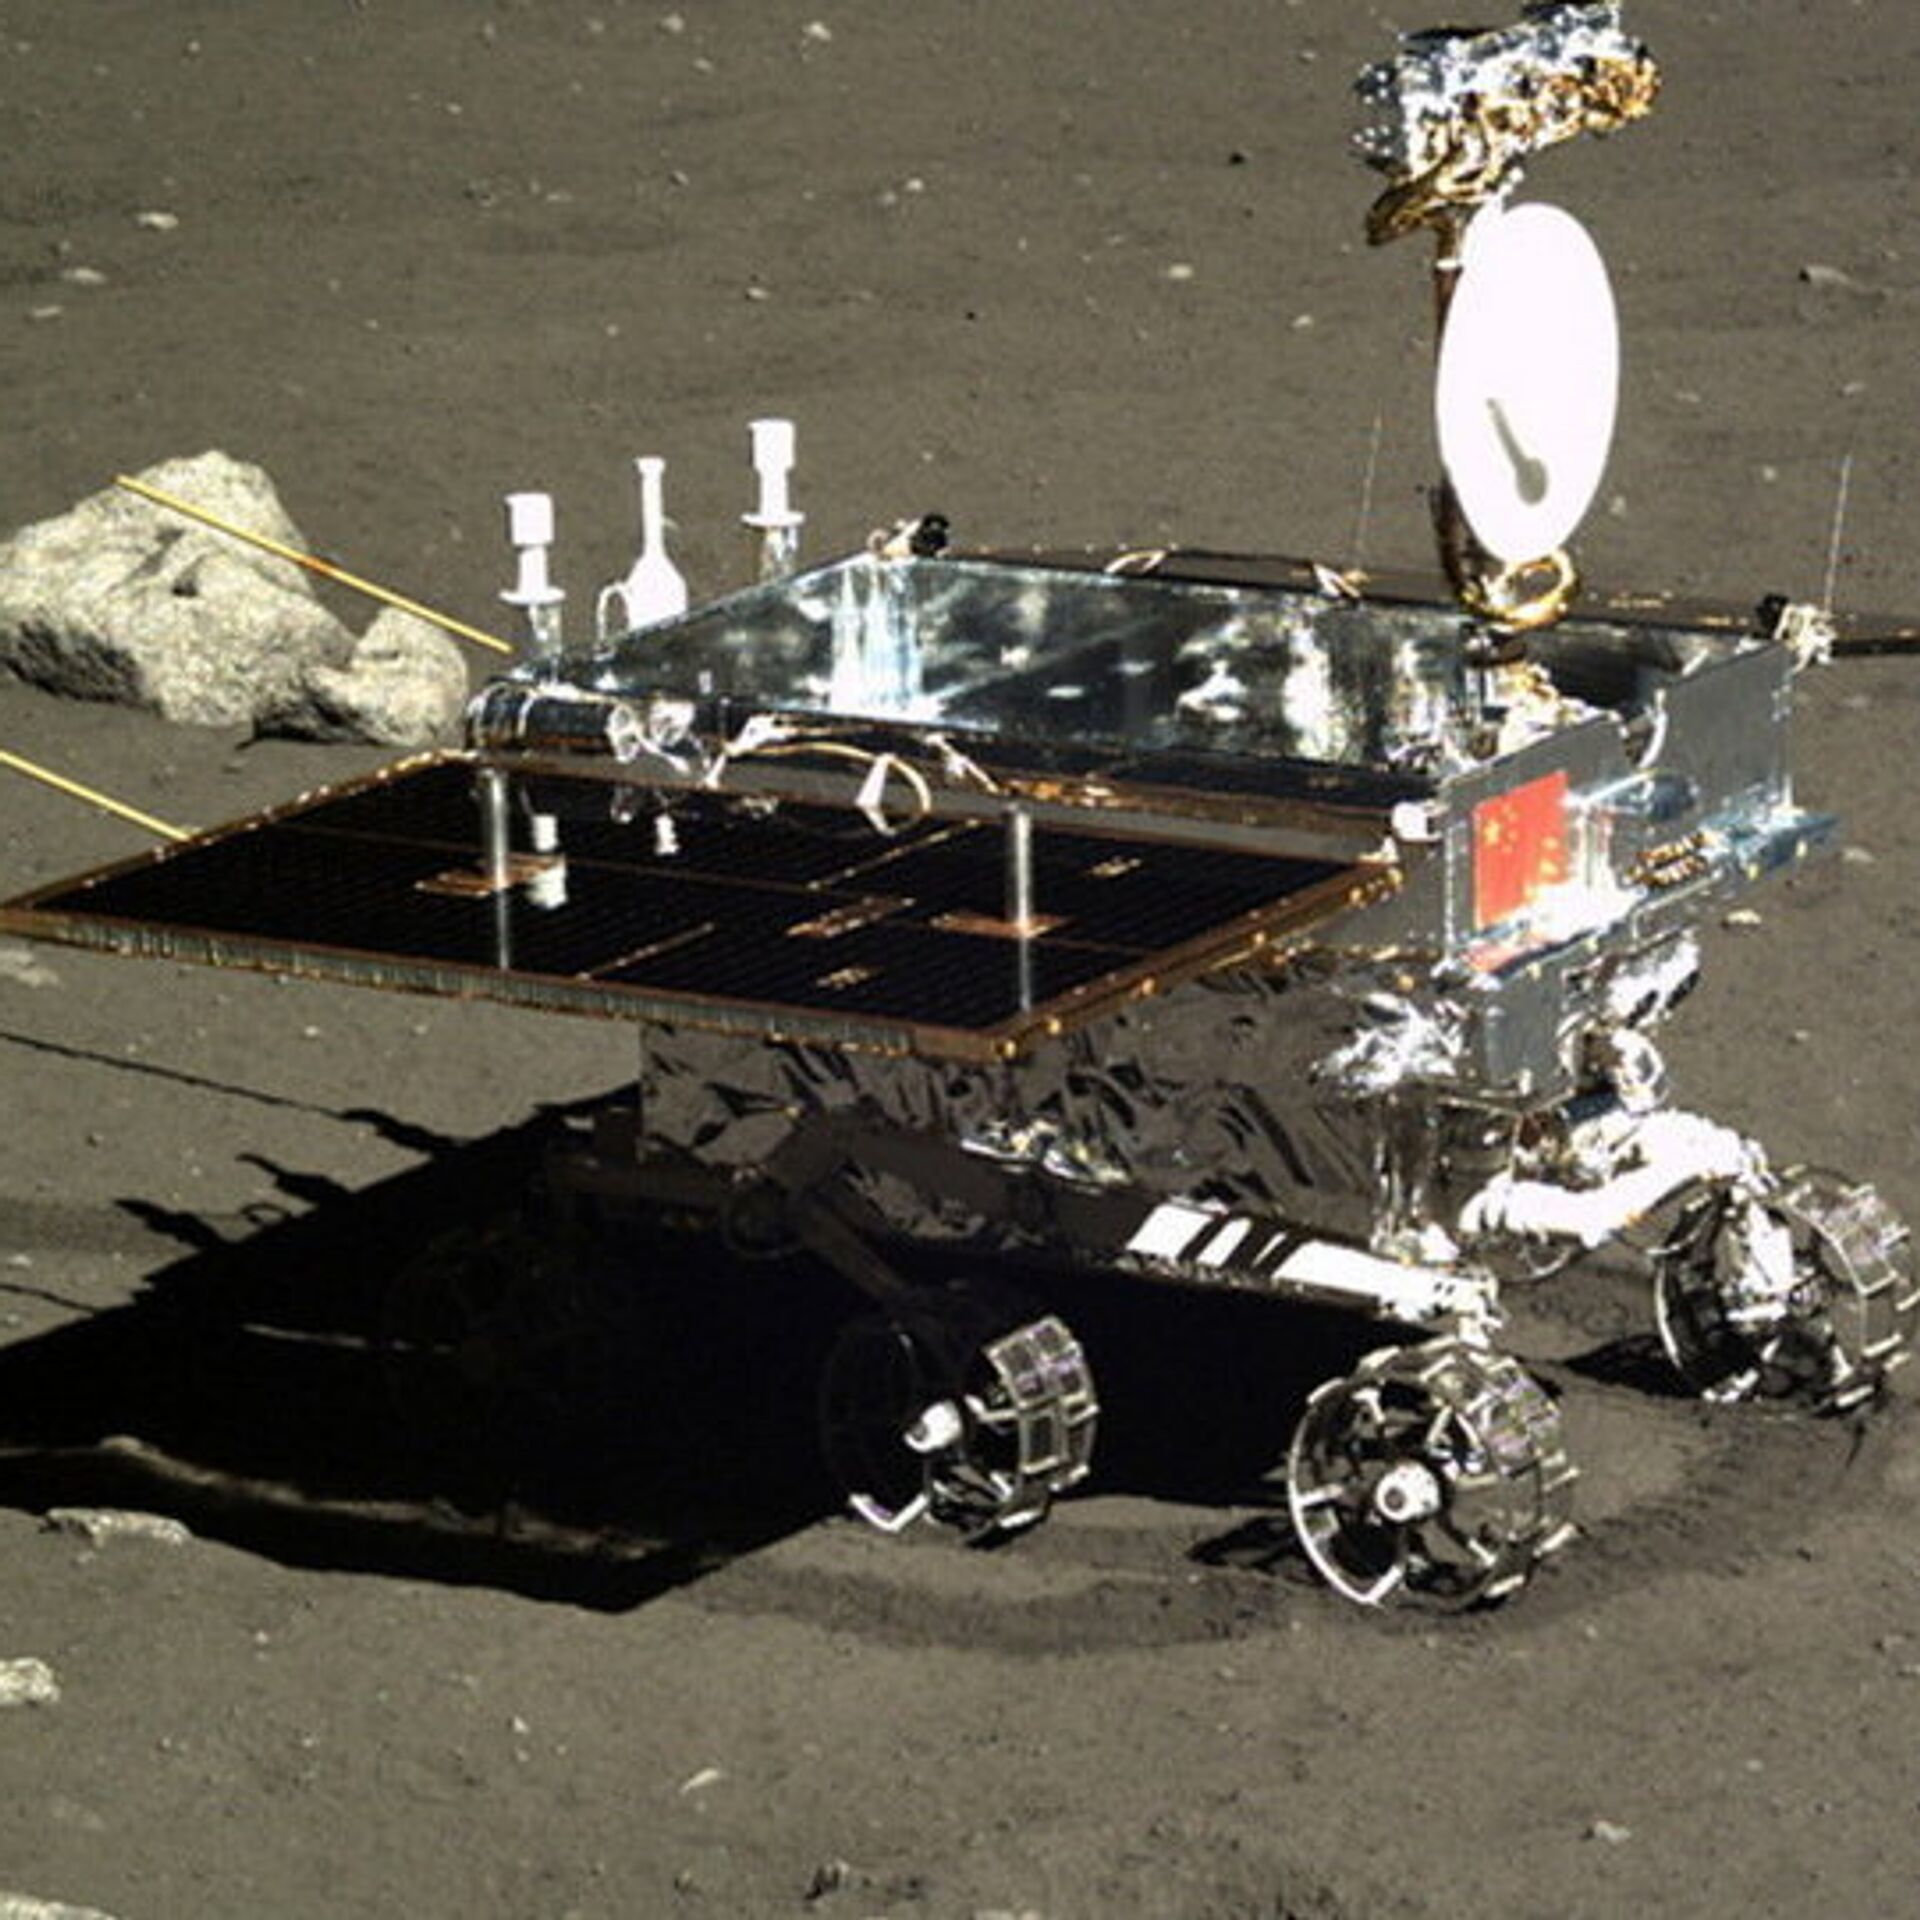 嫦娥六号究竟去月球南极，还是去月球背面？复杂度再上新台阶_采样_探测_任务